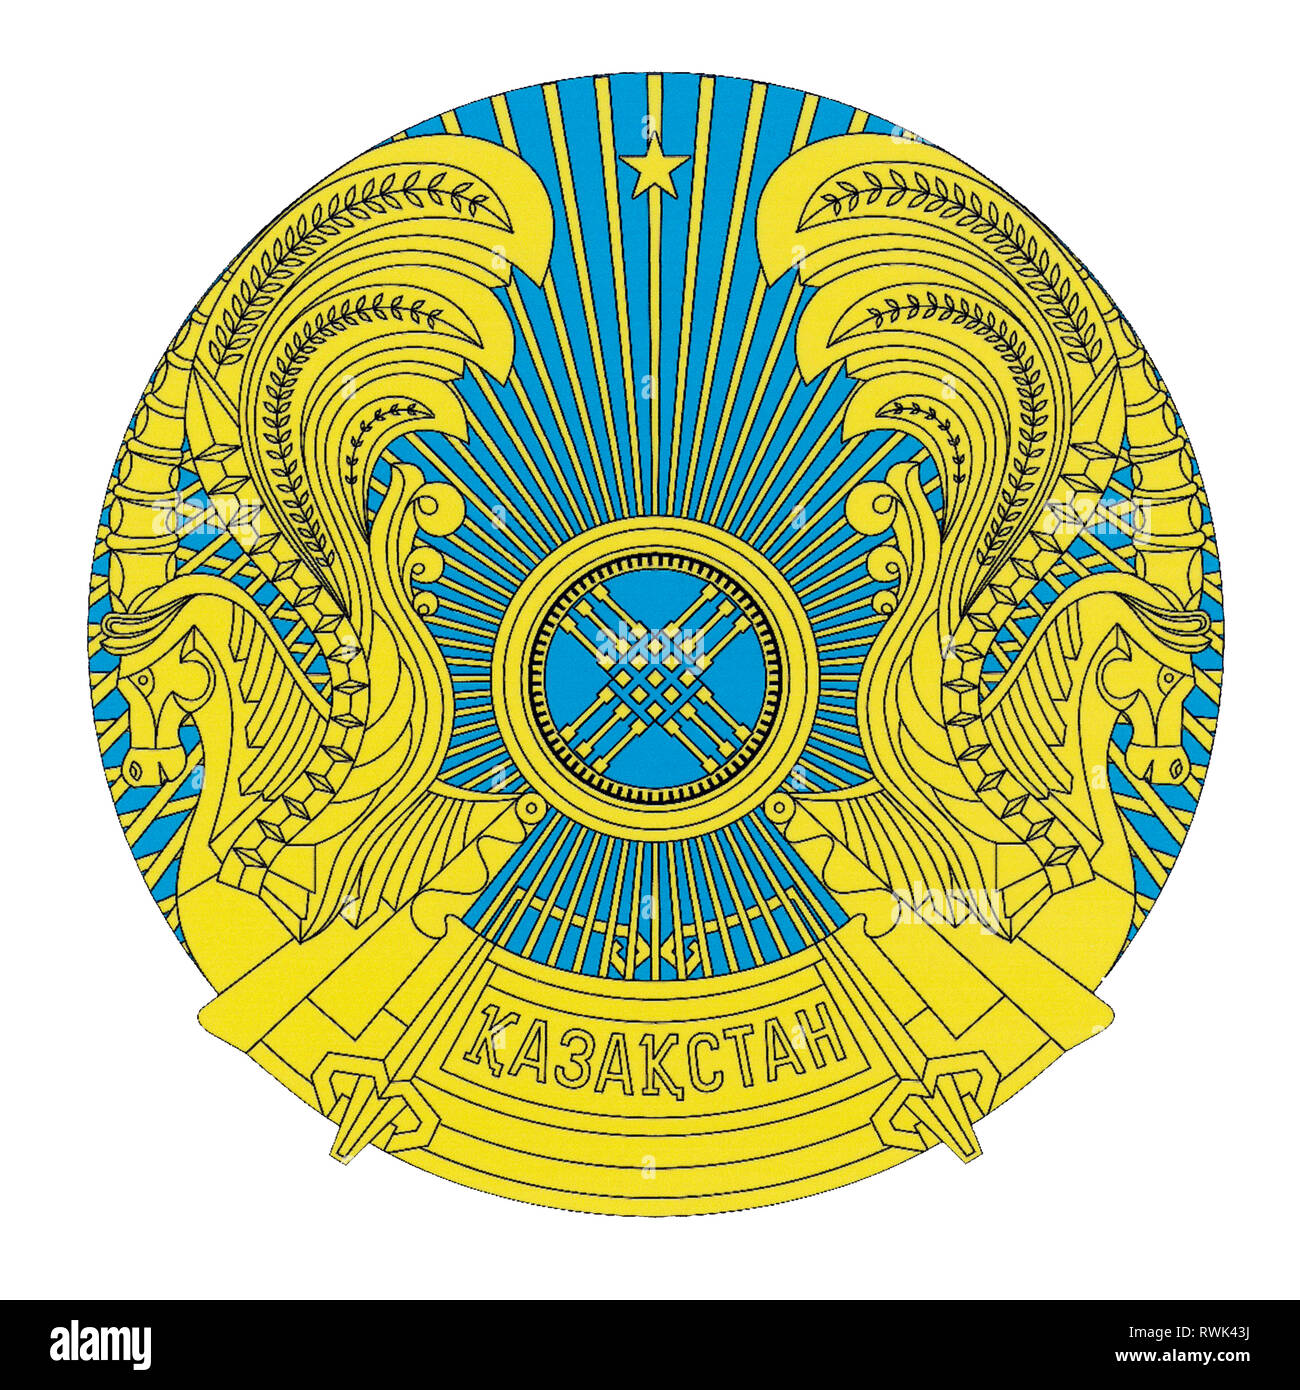 Les armoiries de la République du Kazakhstan. Banque D'Images